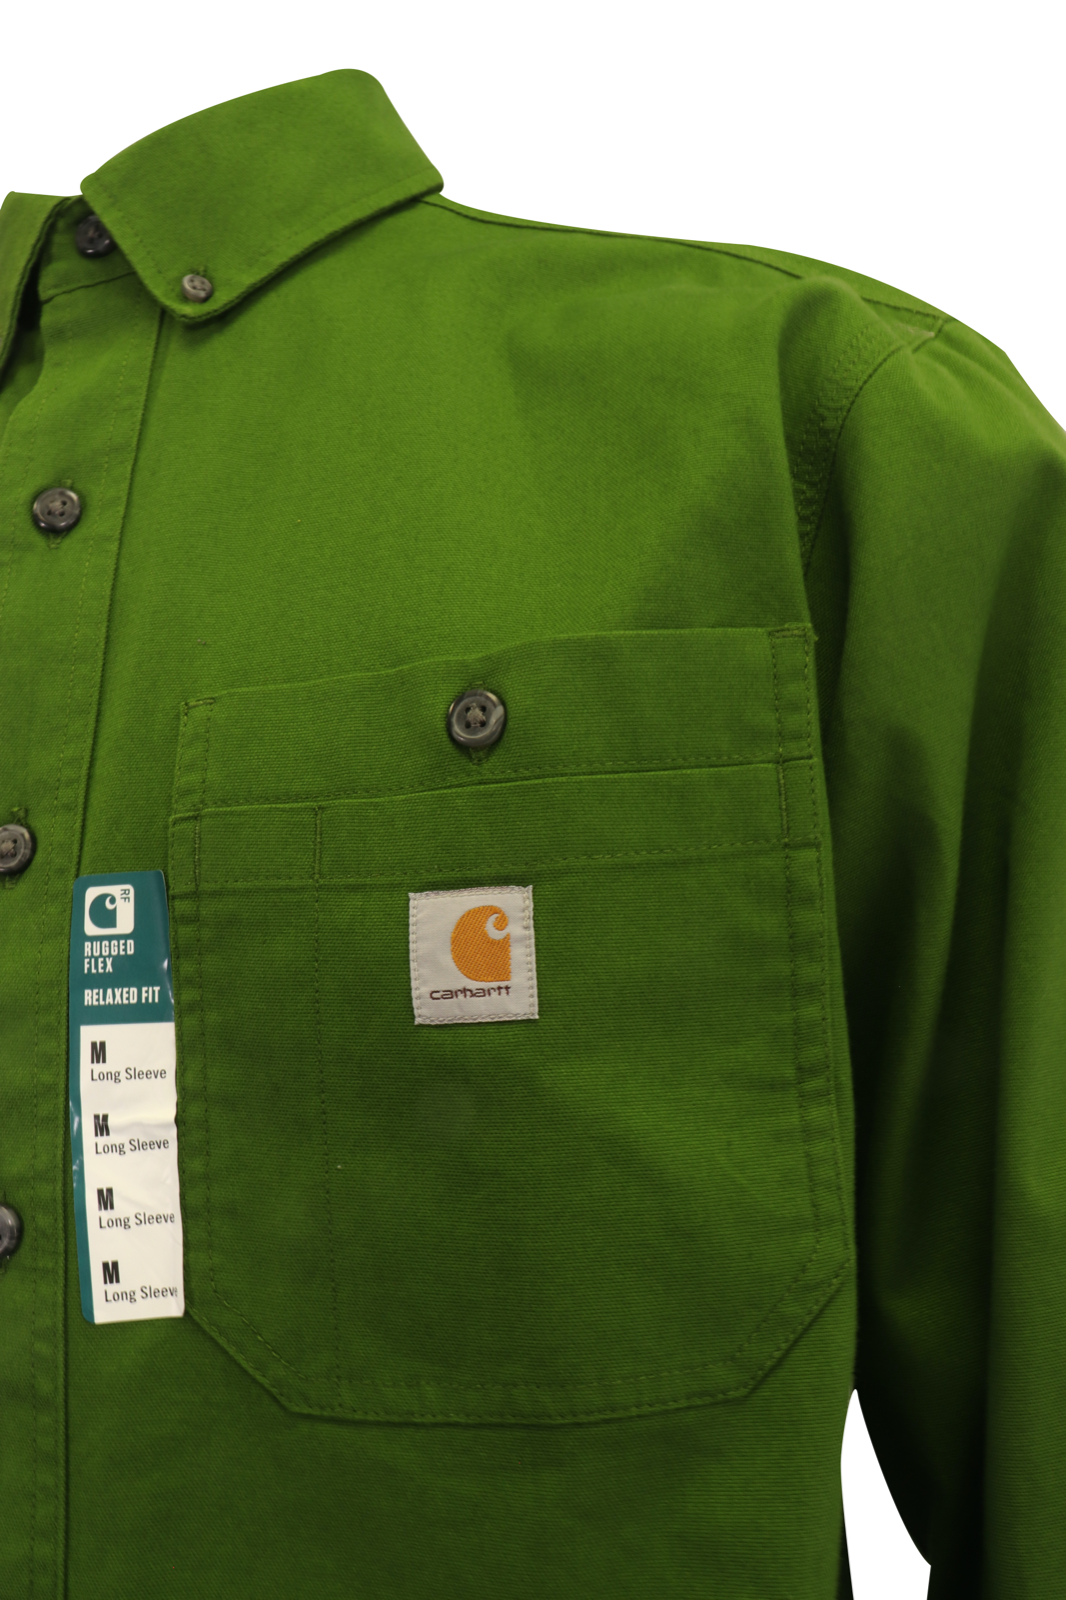 Carhartt Men's Flannel Shirt Lime Green Rugged Long Sleeve (328)